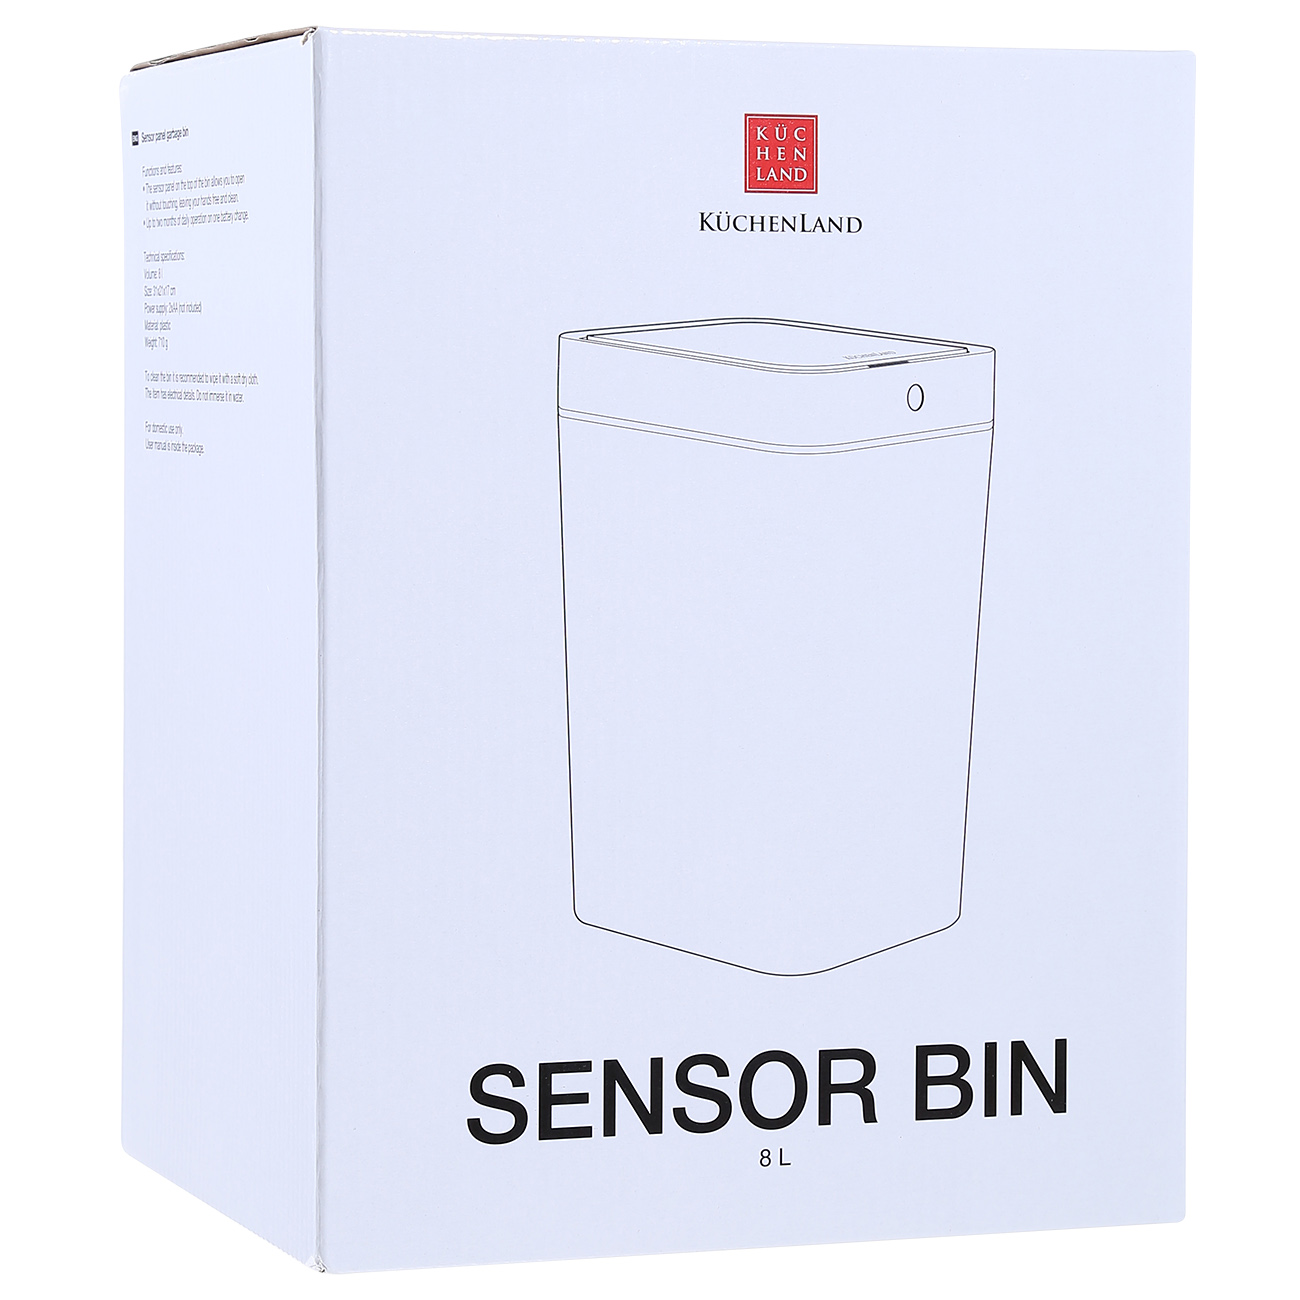 Ведро для мусора, 8 л, сенсорное, пластик, прямоугольное, белое, Sensor bin